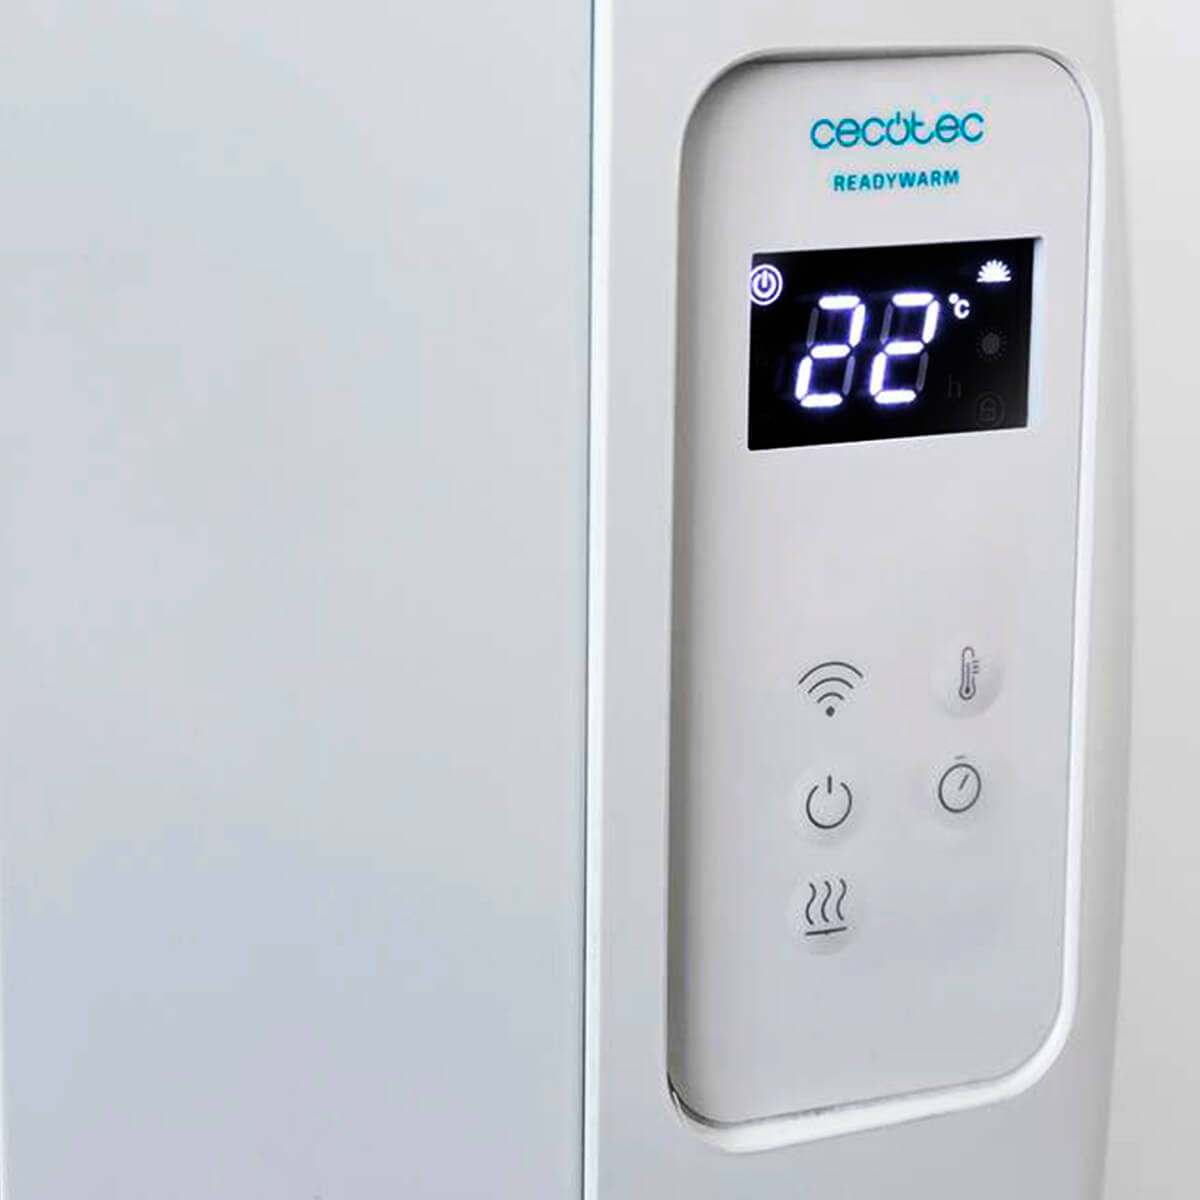 продаём Cecotec Ready Warm 2000 Thermal Connected в Украине - фото 4